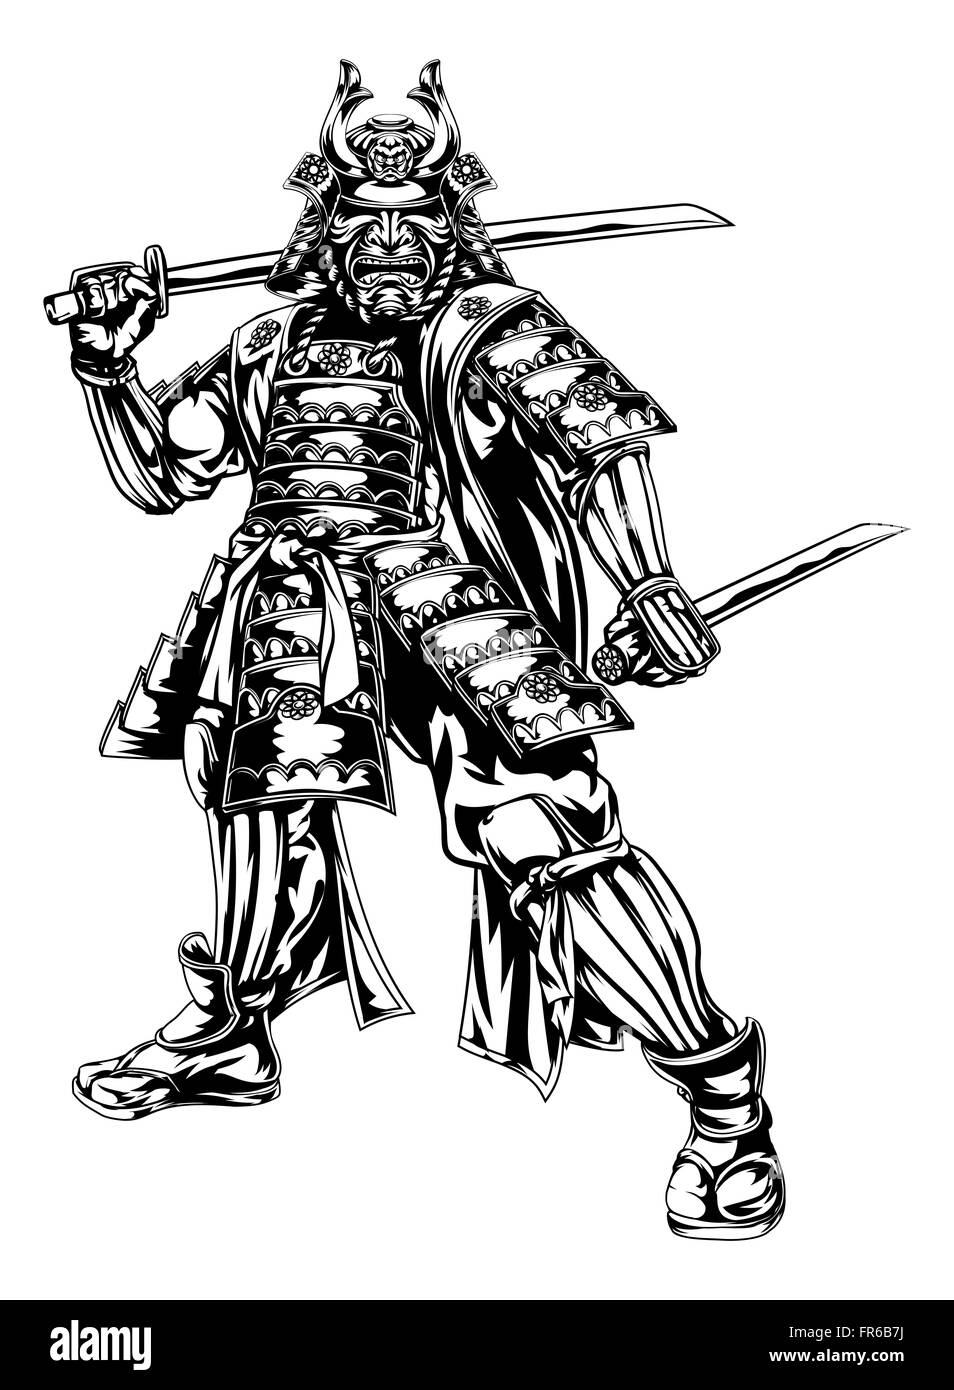 Une illustration d'un guerrier samouraï japonais tenant deux épées Banque D'Images